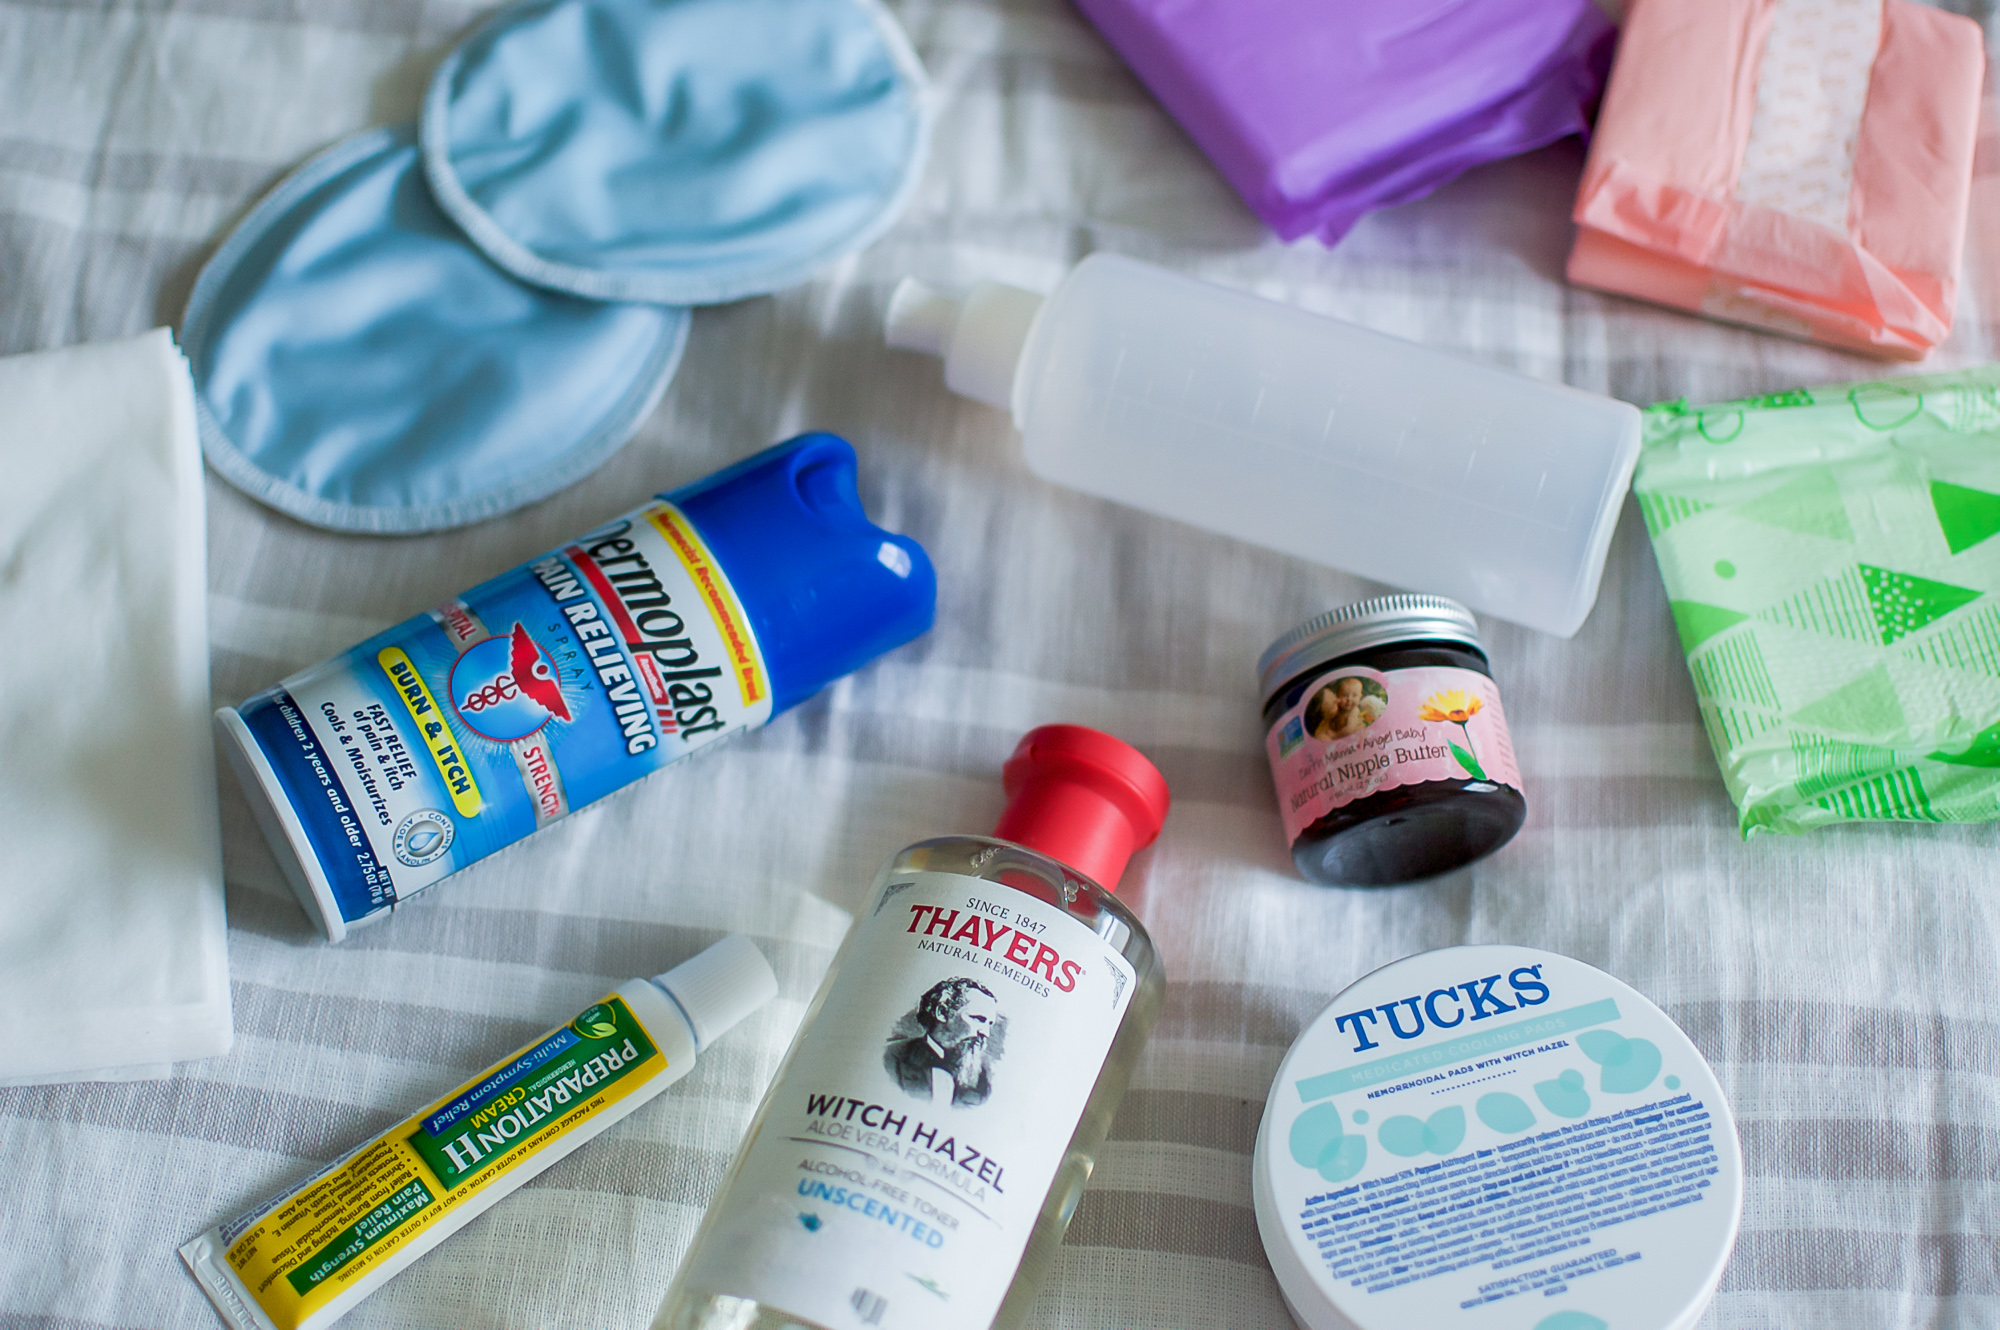 Postpartum essentials kit